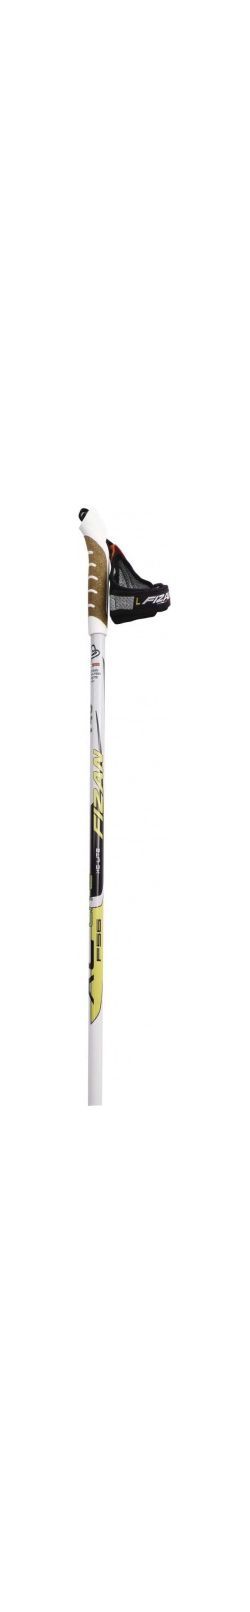 Fizan - Прочные палки лыжные беговые XC Lite